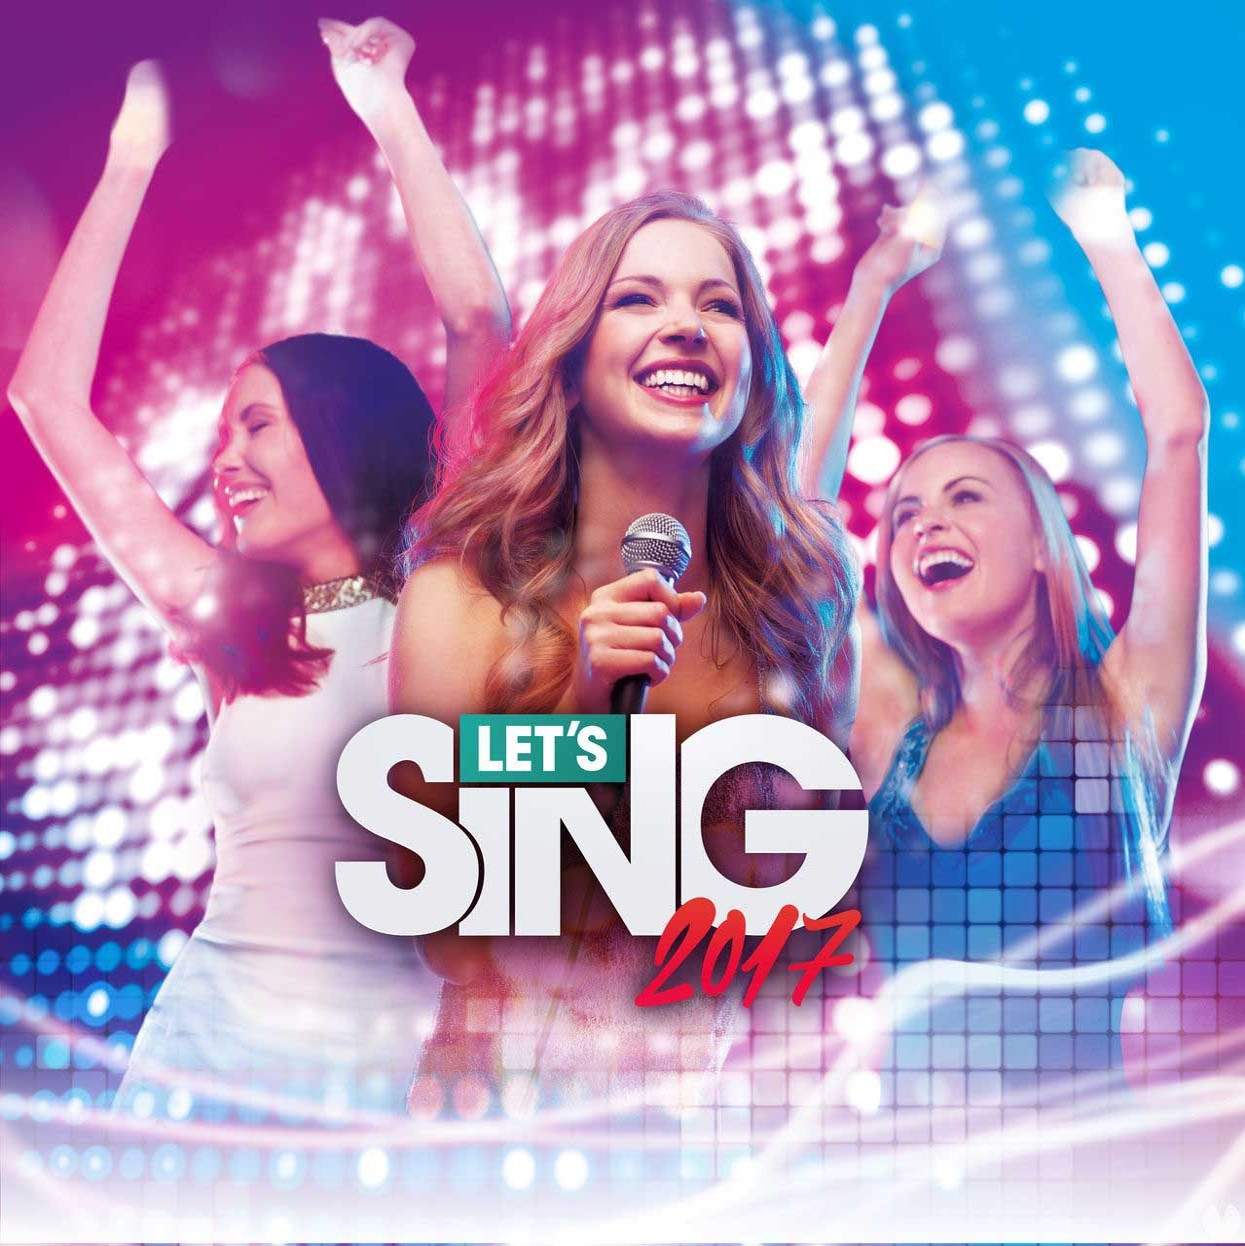 Let's Sing 2017 nu beschikbaar